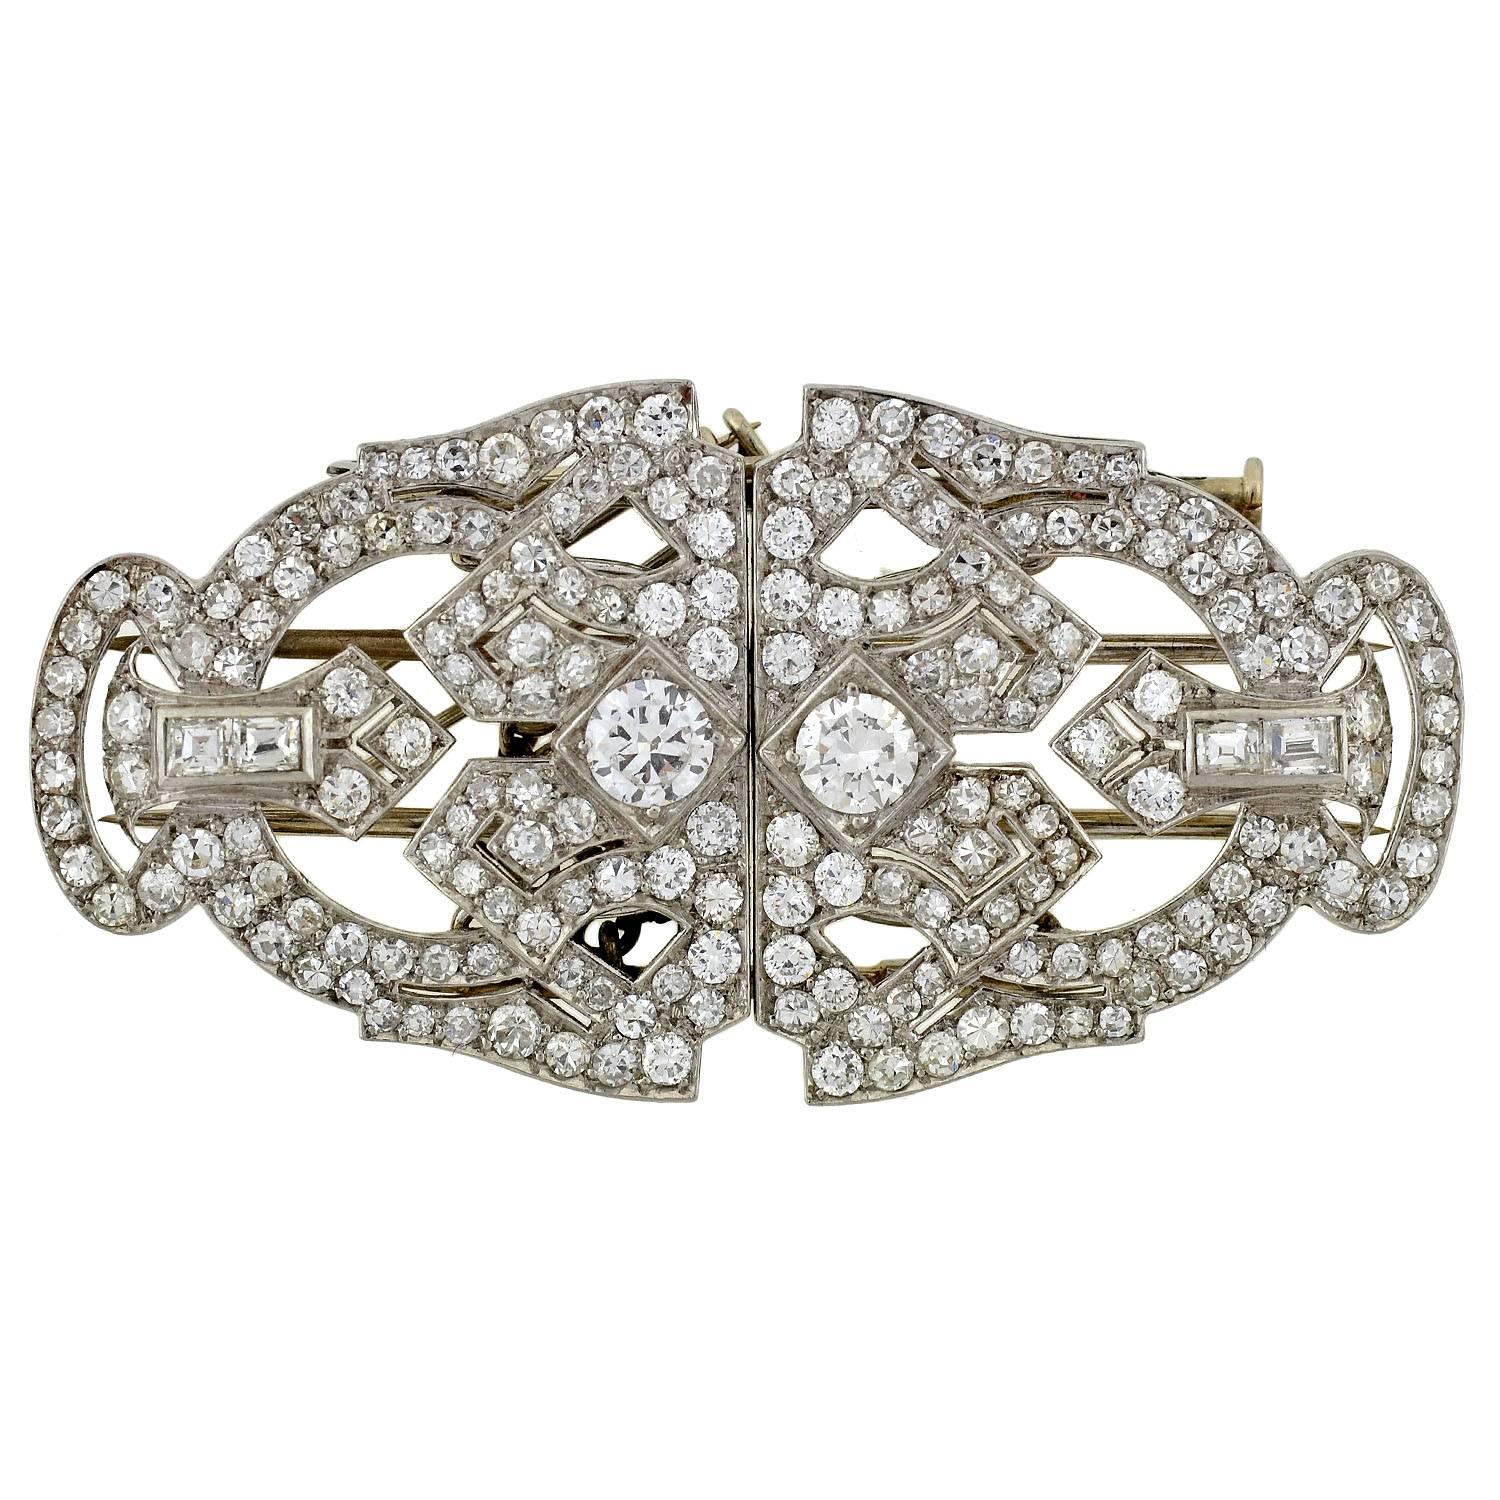 Eine absolut exquisite Anstecknadel aus Platin und Diamanten aus der Zeit des Art Deco (ca. 1920)! Dieses wunderbare und ungewöhnliche Stück ist aus Platin gefertigt und mit 3,51 Karat funkelnden Diamanten besetzt. Bestehend aus 2 Pelzclips, die in